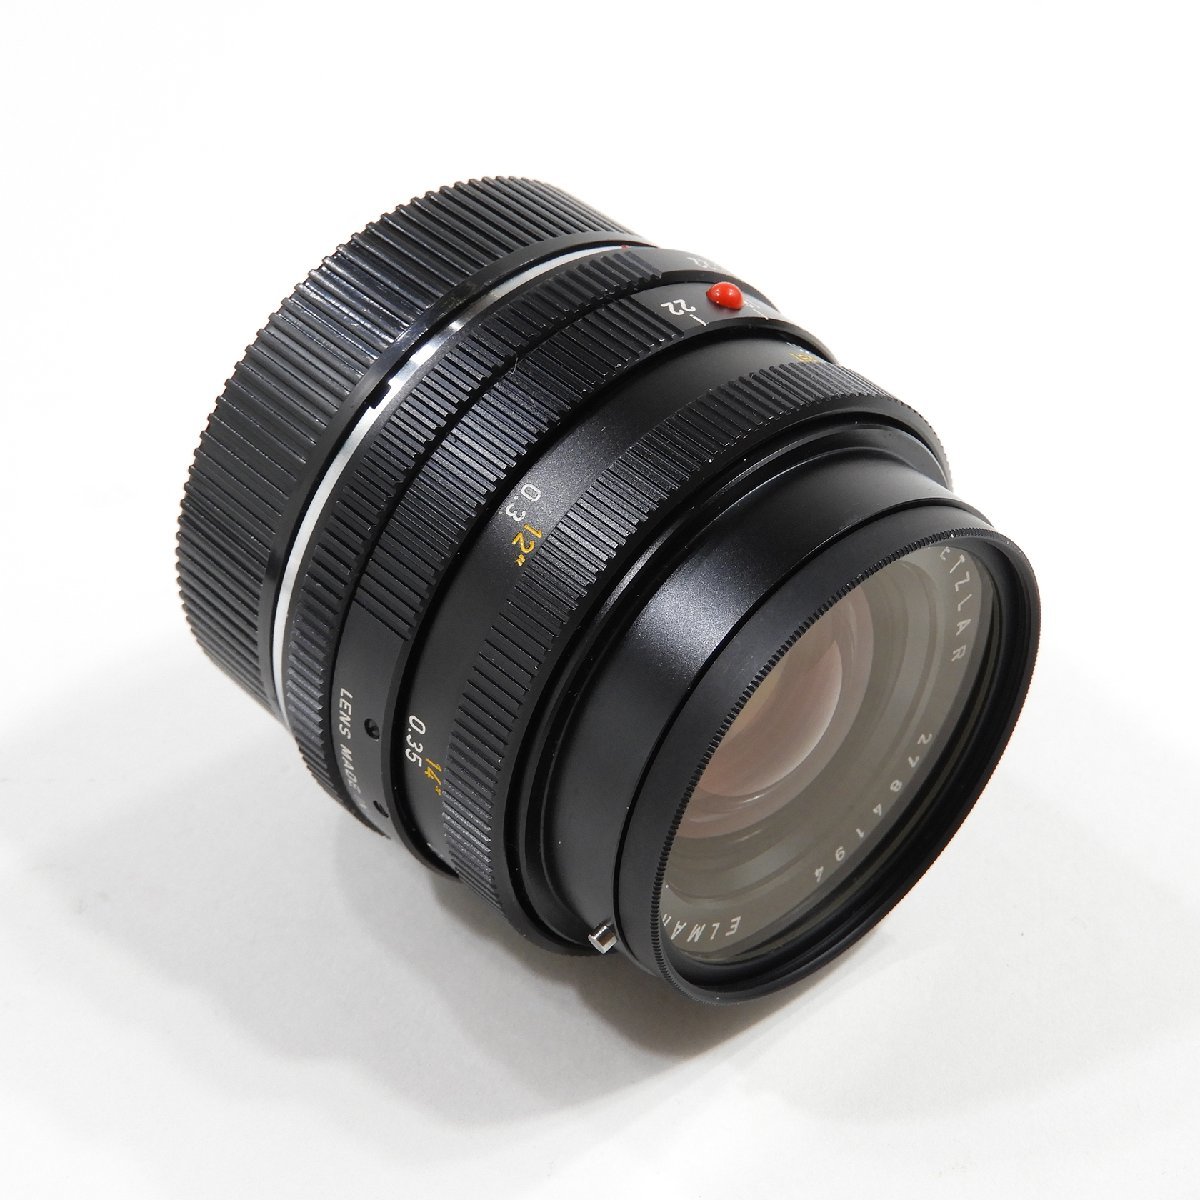 Leitz Wetzlar ライカ ELMARIT-R 28mm F2.8 レンズ ジャンク #10857 オールド レトロ カメラ アクセサリー_画像2